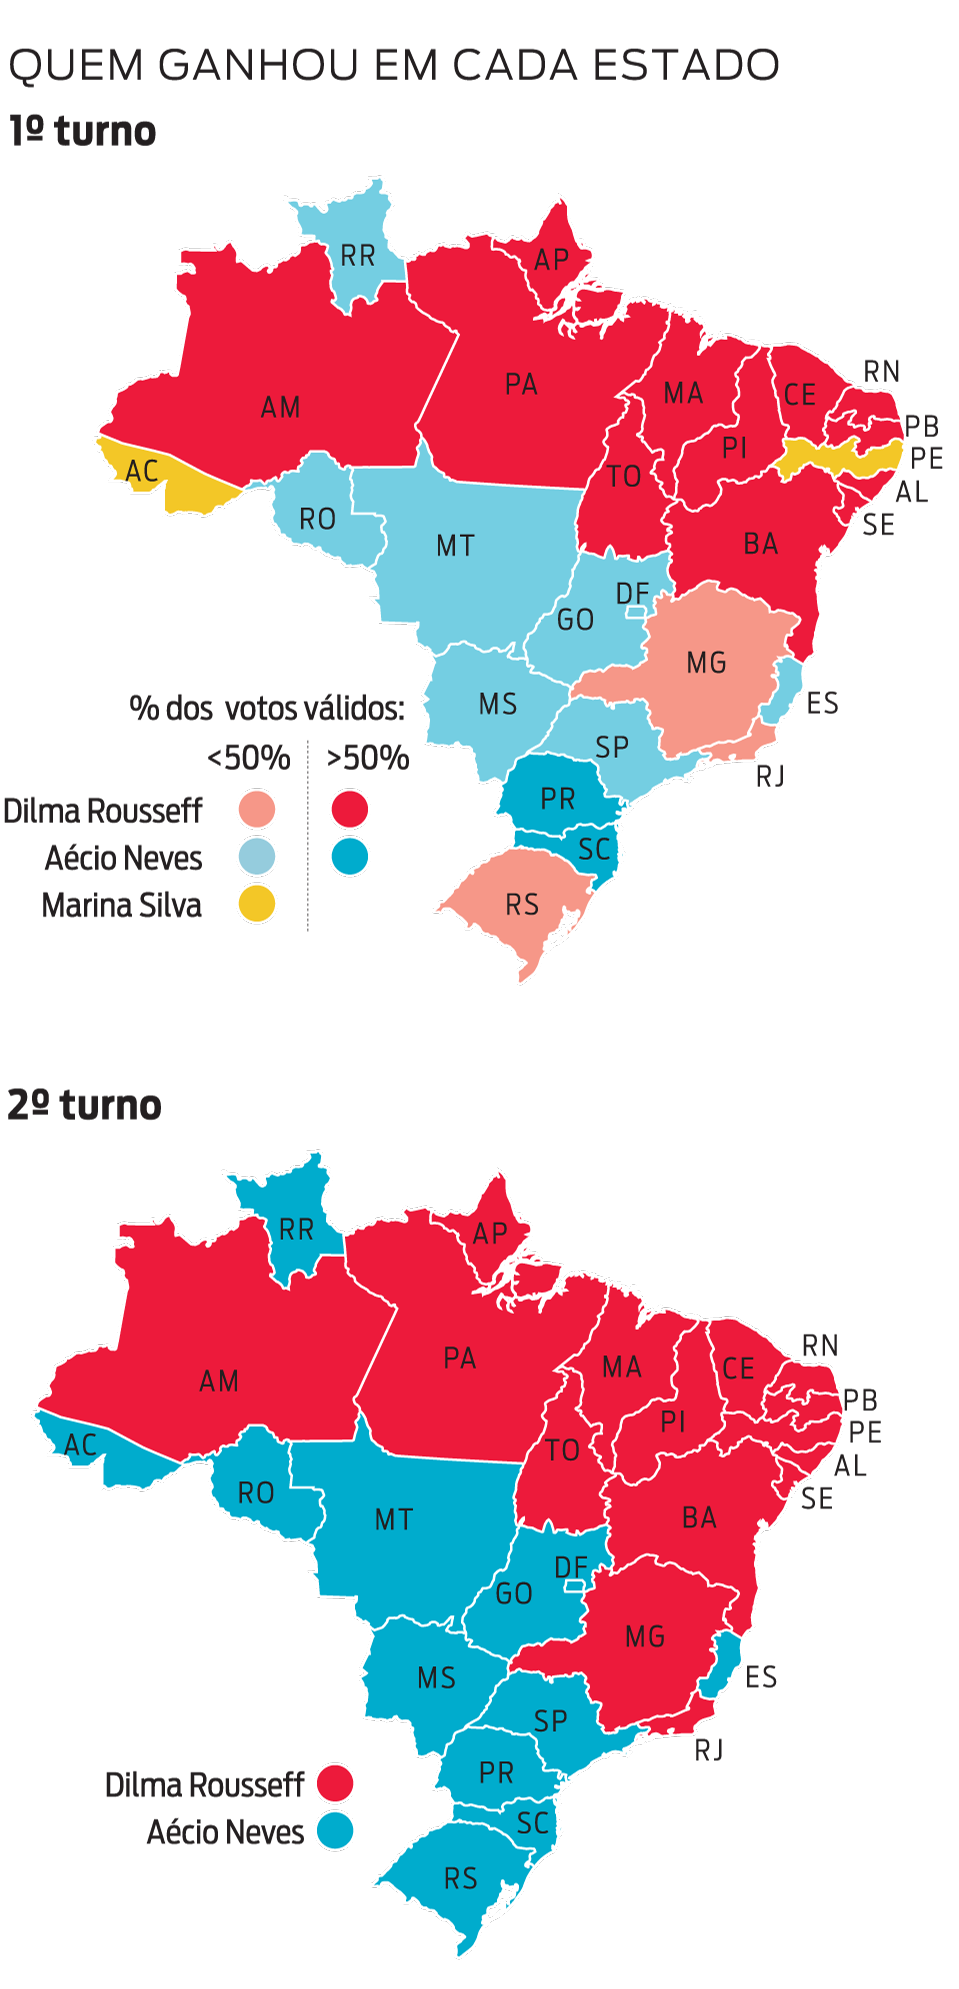 Infográfico: mapas por estado do resultado das eleições presidenciais no 2º turno em 2014